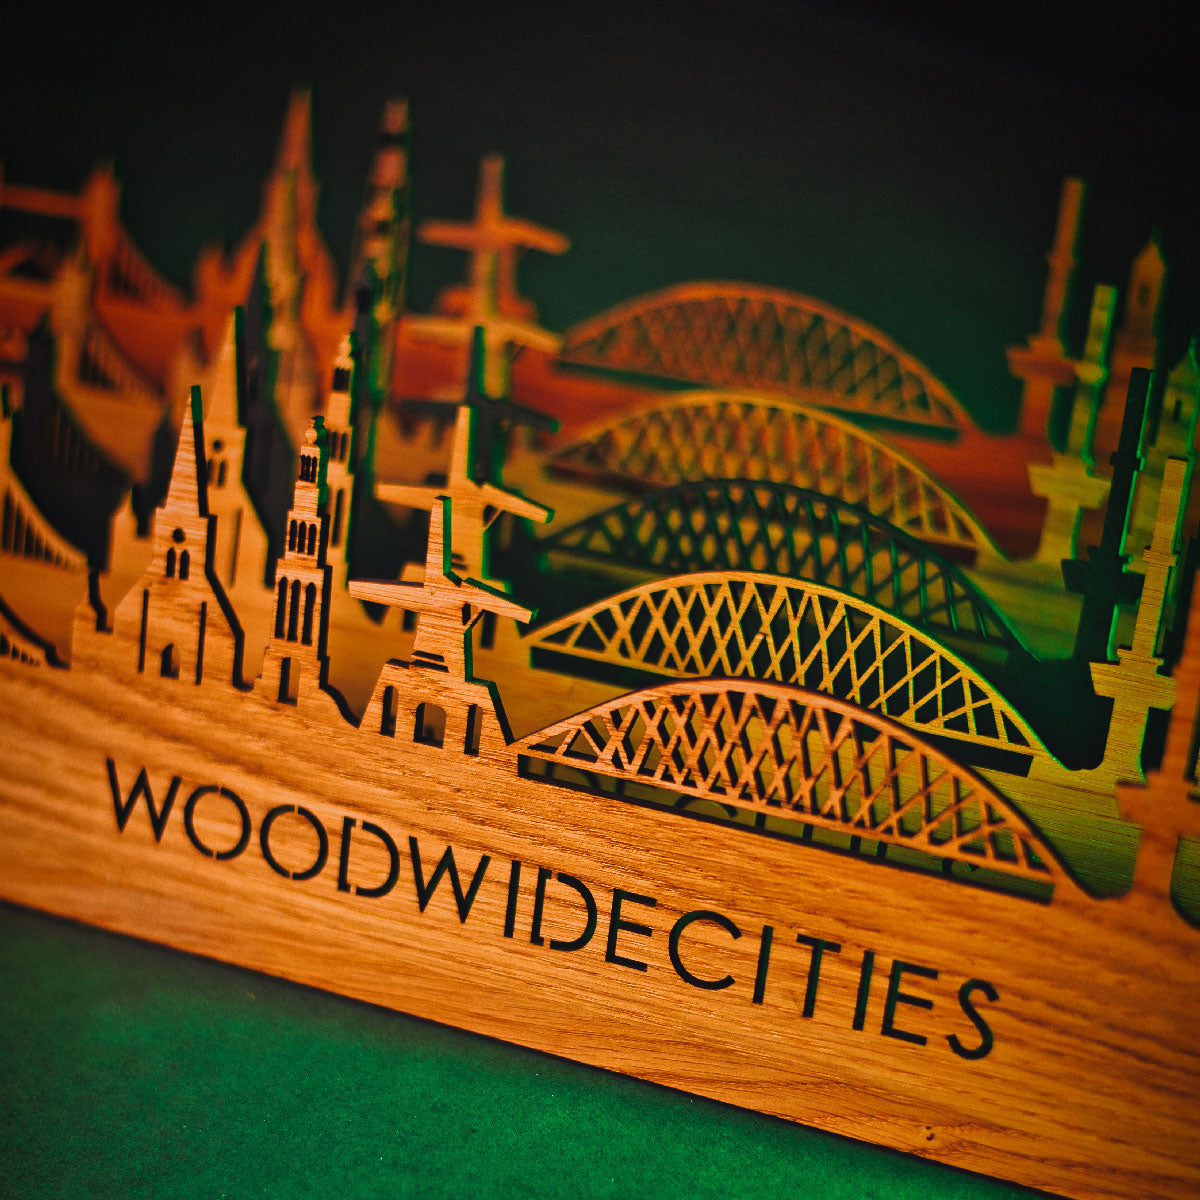 Skyline Klok Houten Bamboe houten cadeau wanddecoratie relatiegeschenk van WoodWideCities